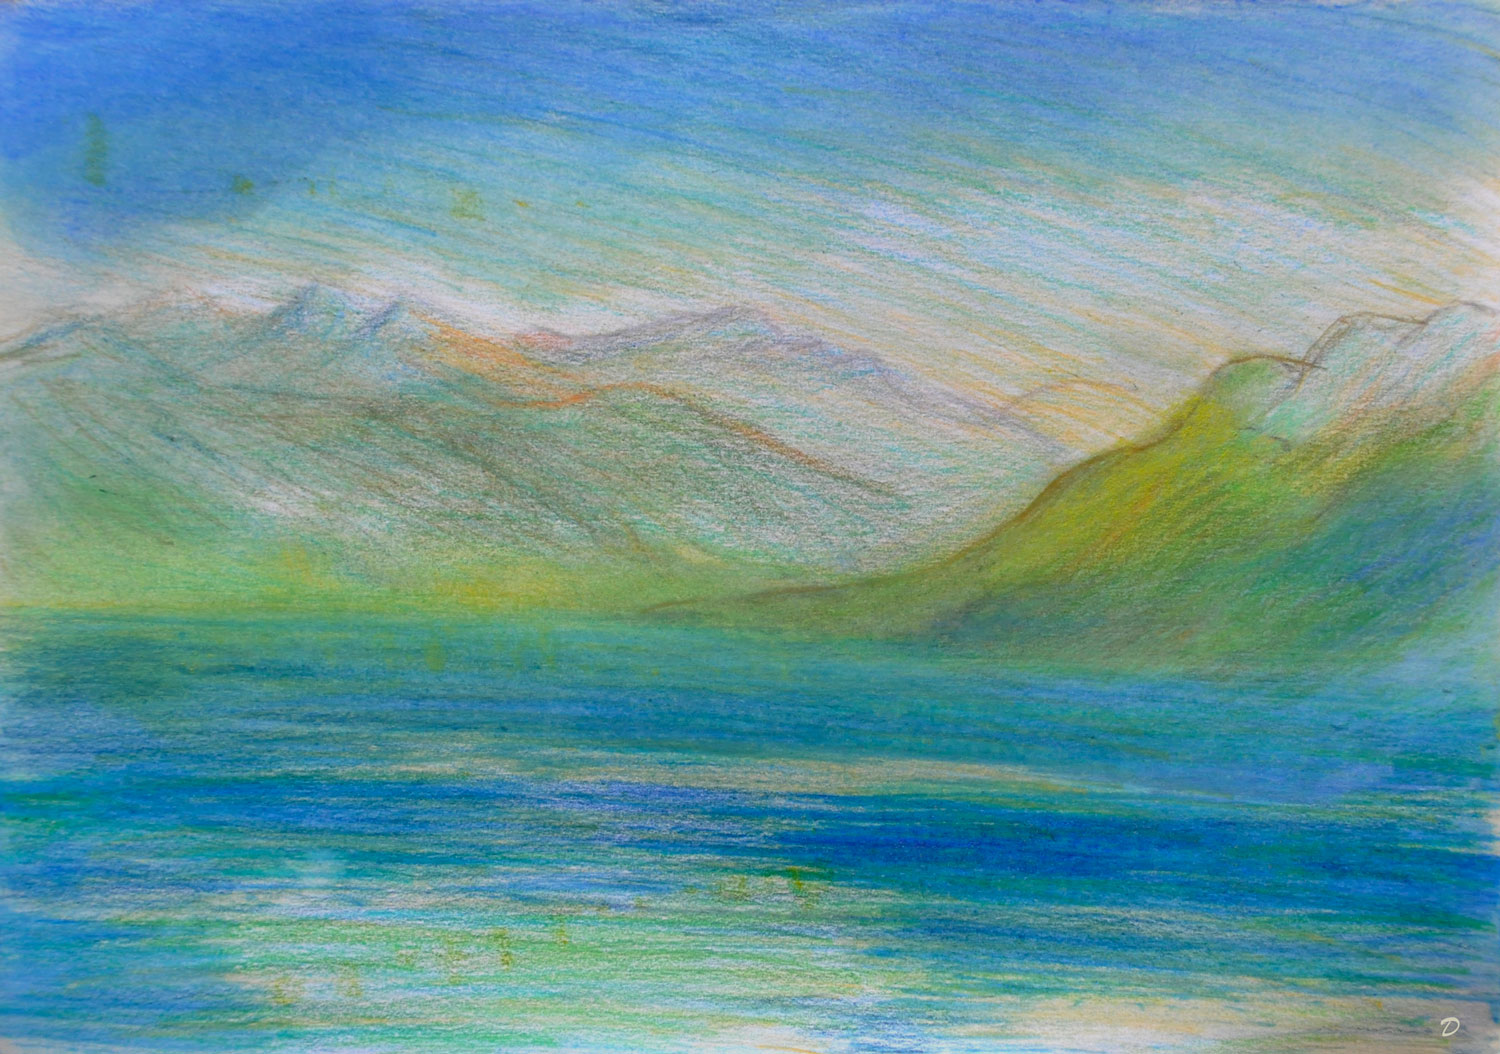 Lac Léman, St Prex, 43. Crayon de couleur, pastel et huile sur papier, 21x29, 2022